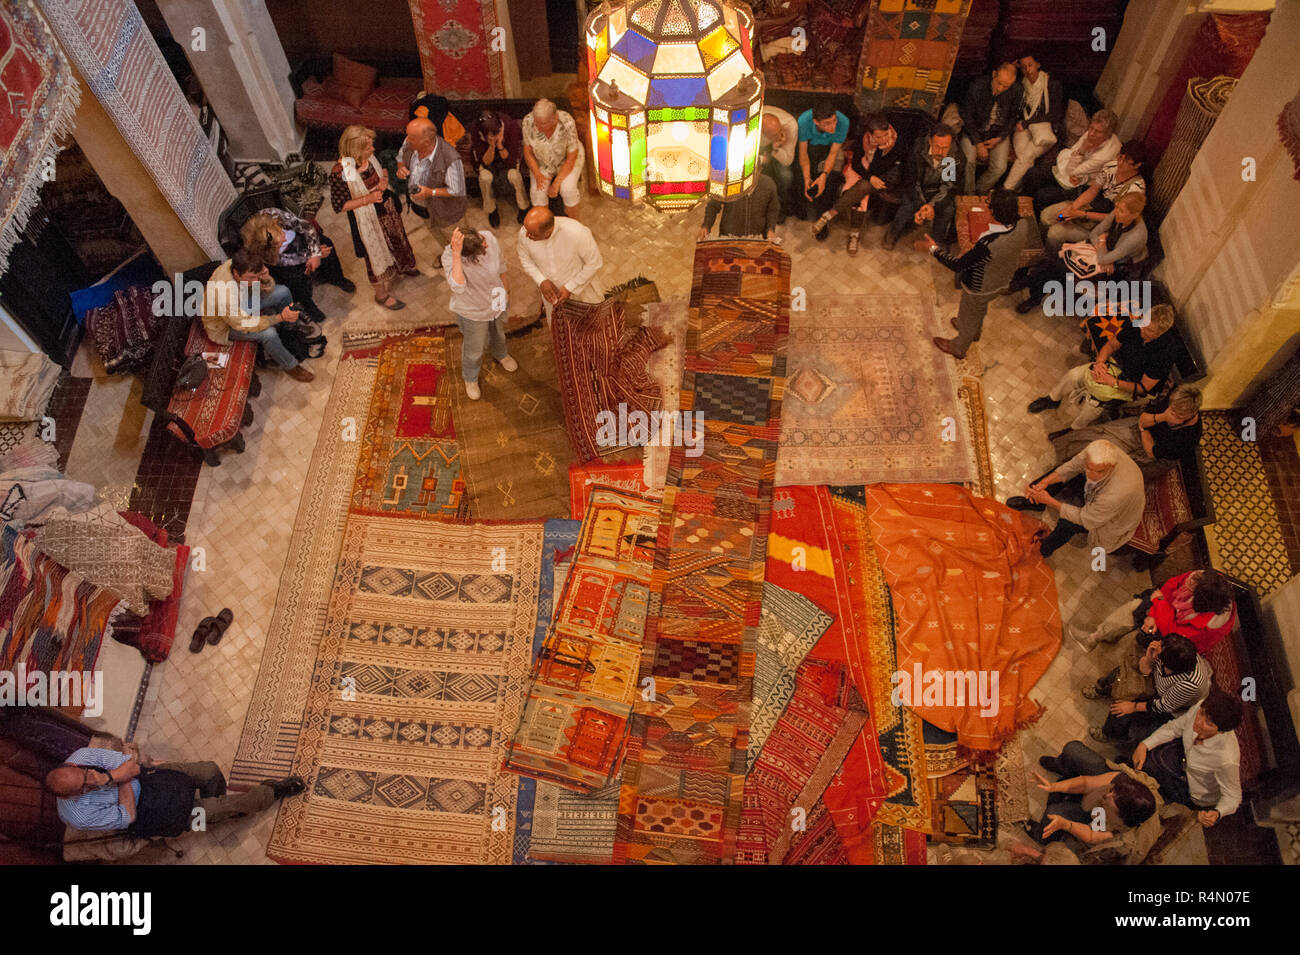 18-04-11. Marrakech, Maroc. Un groupe de touristes participant à une vente à l'une des plus grandes boutiques capret dans la médina. Photographié d'abov Banque D'Images